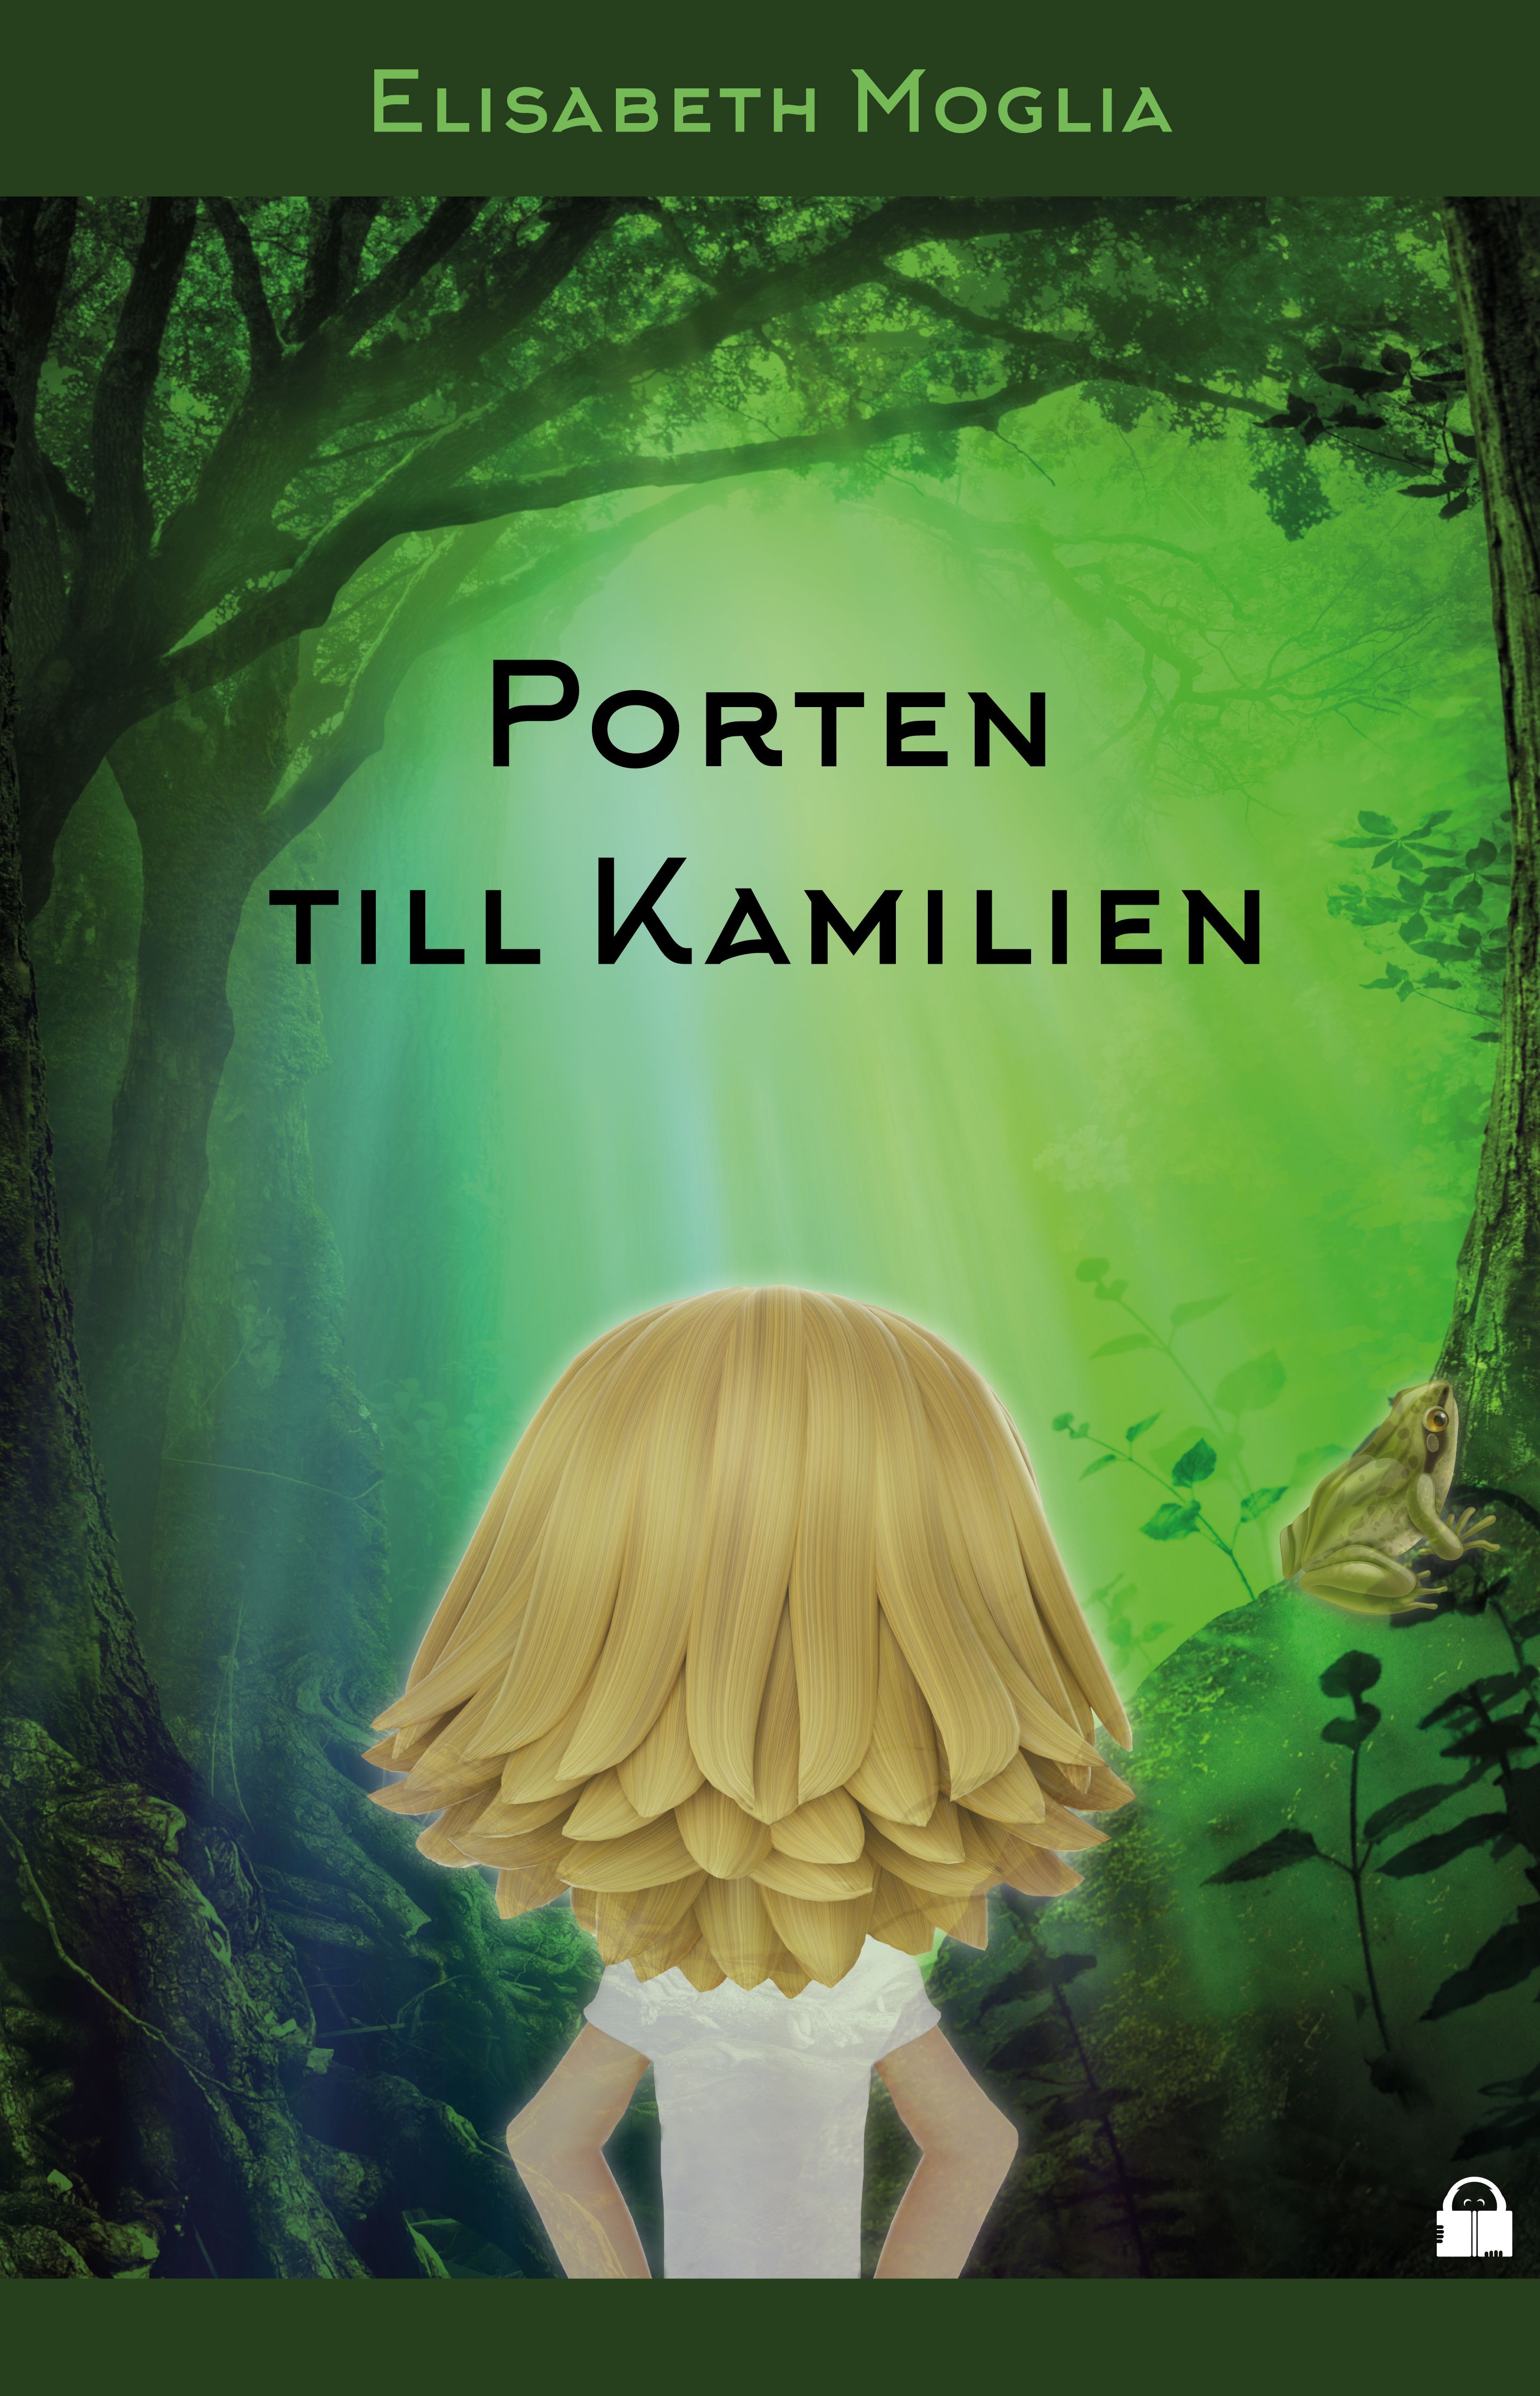 Porten till Kamilien, e-bog af Elisabeth Moglia